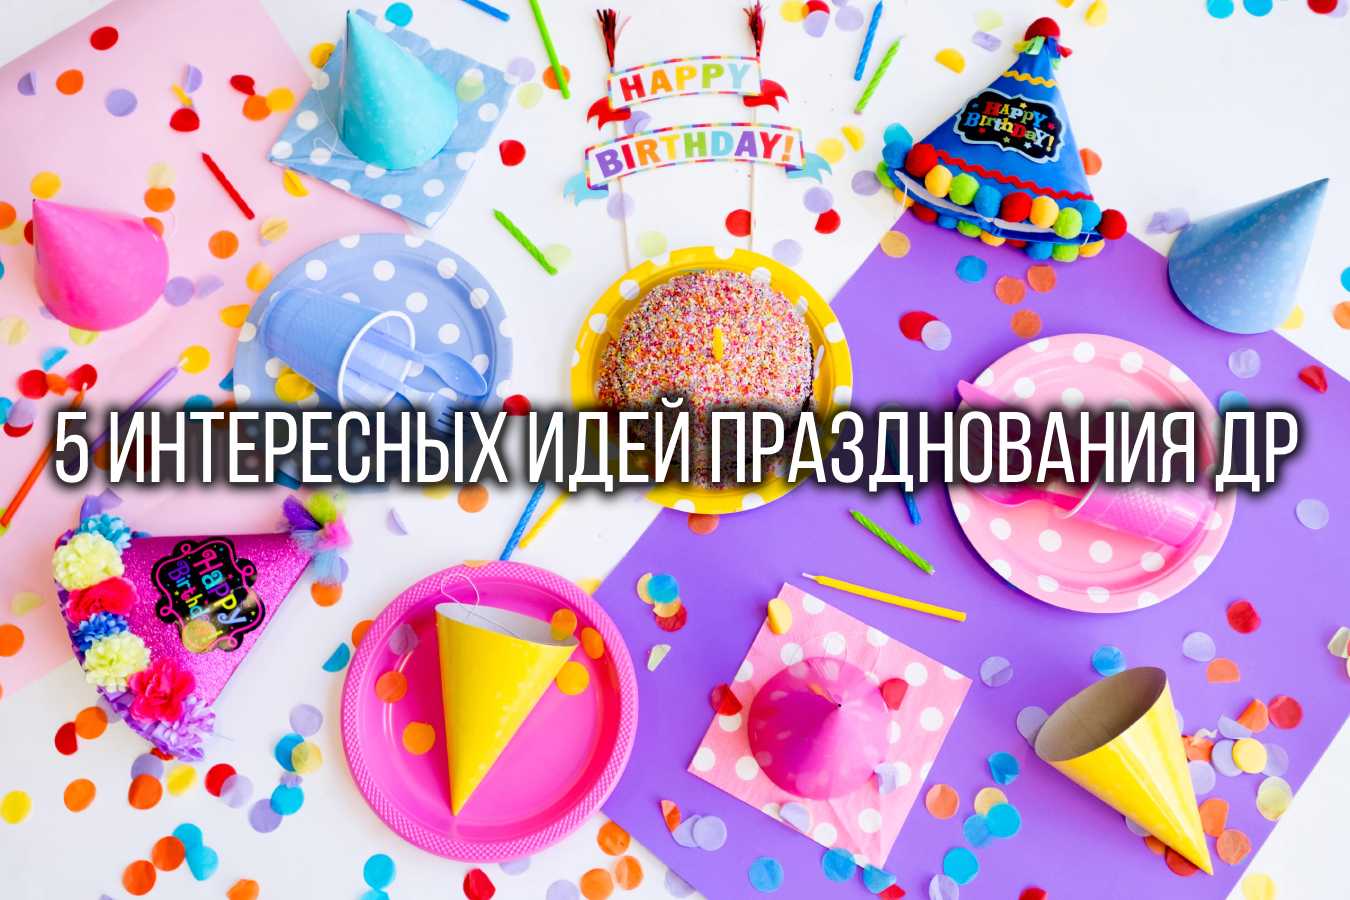 5 интересных идей празднования дня рождения